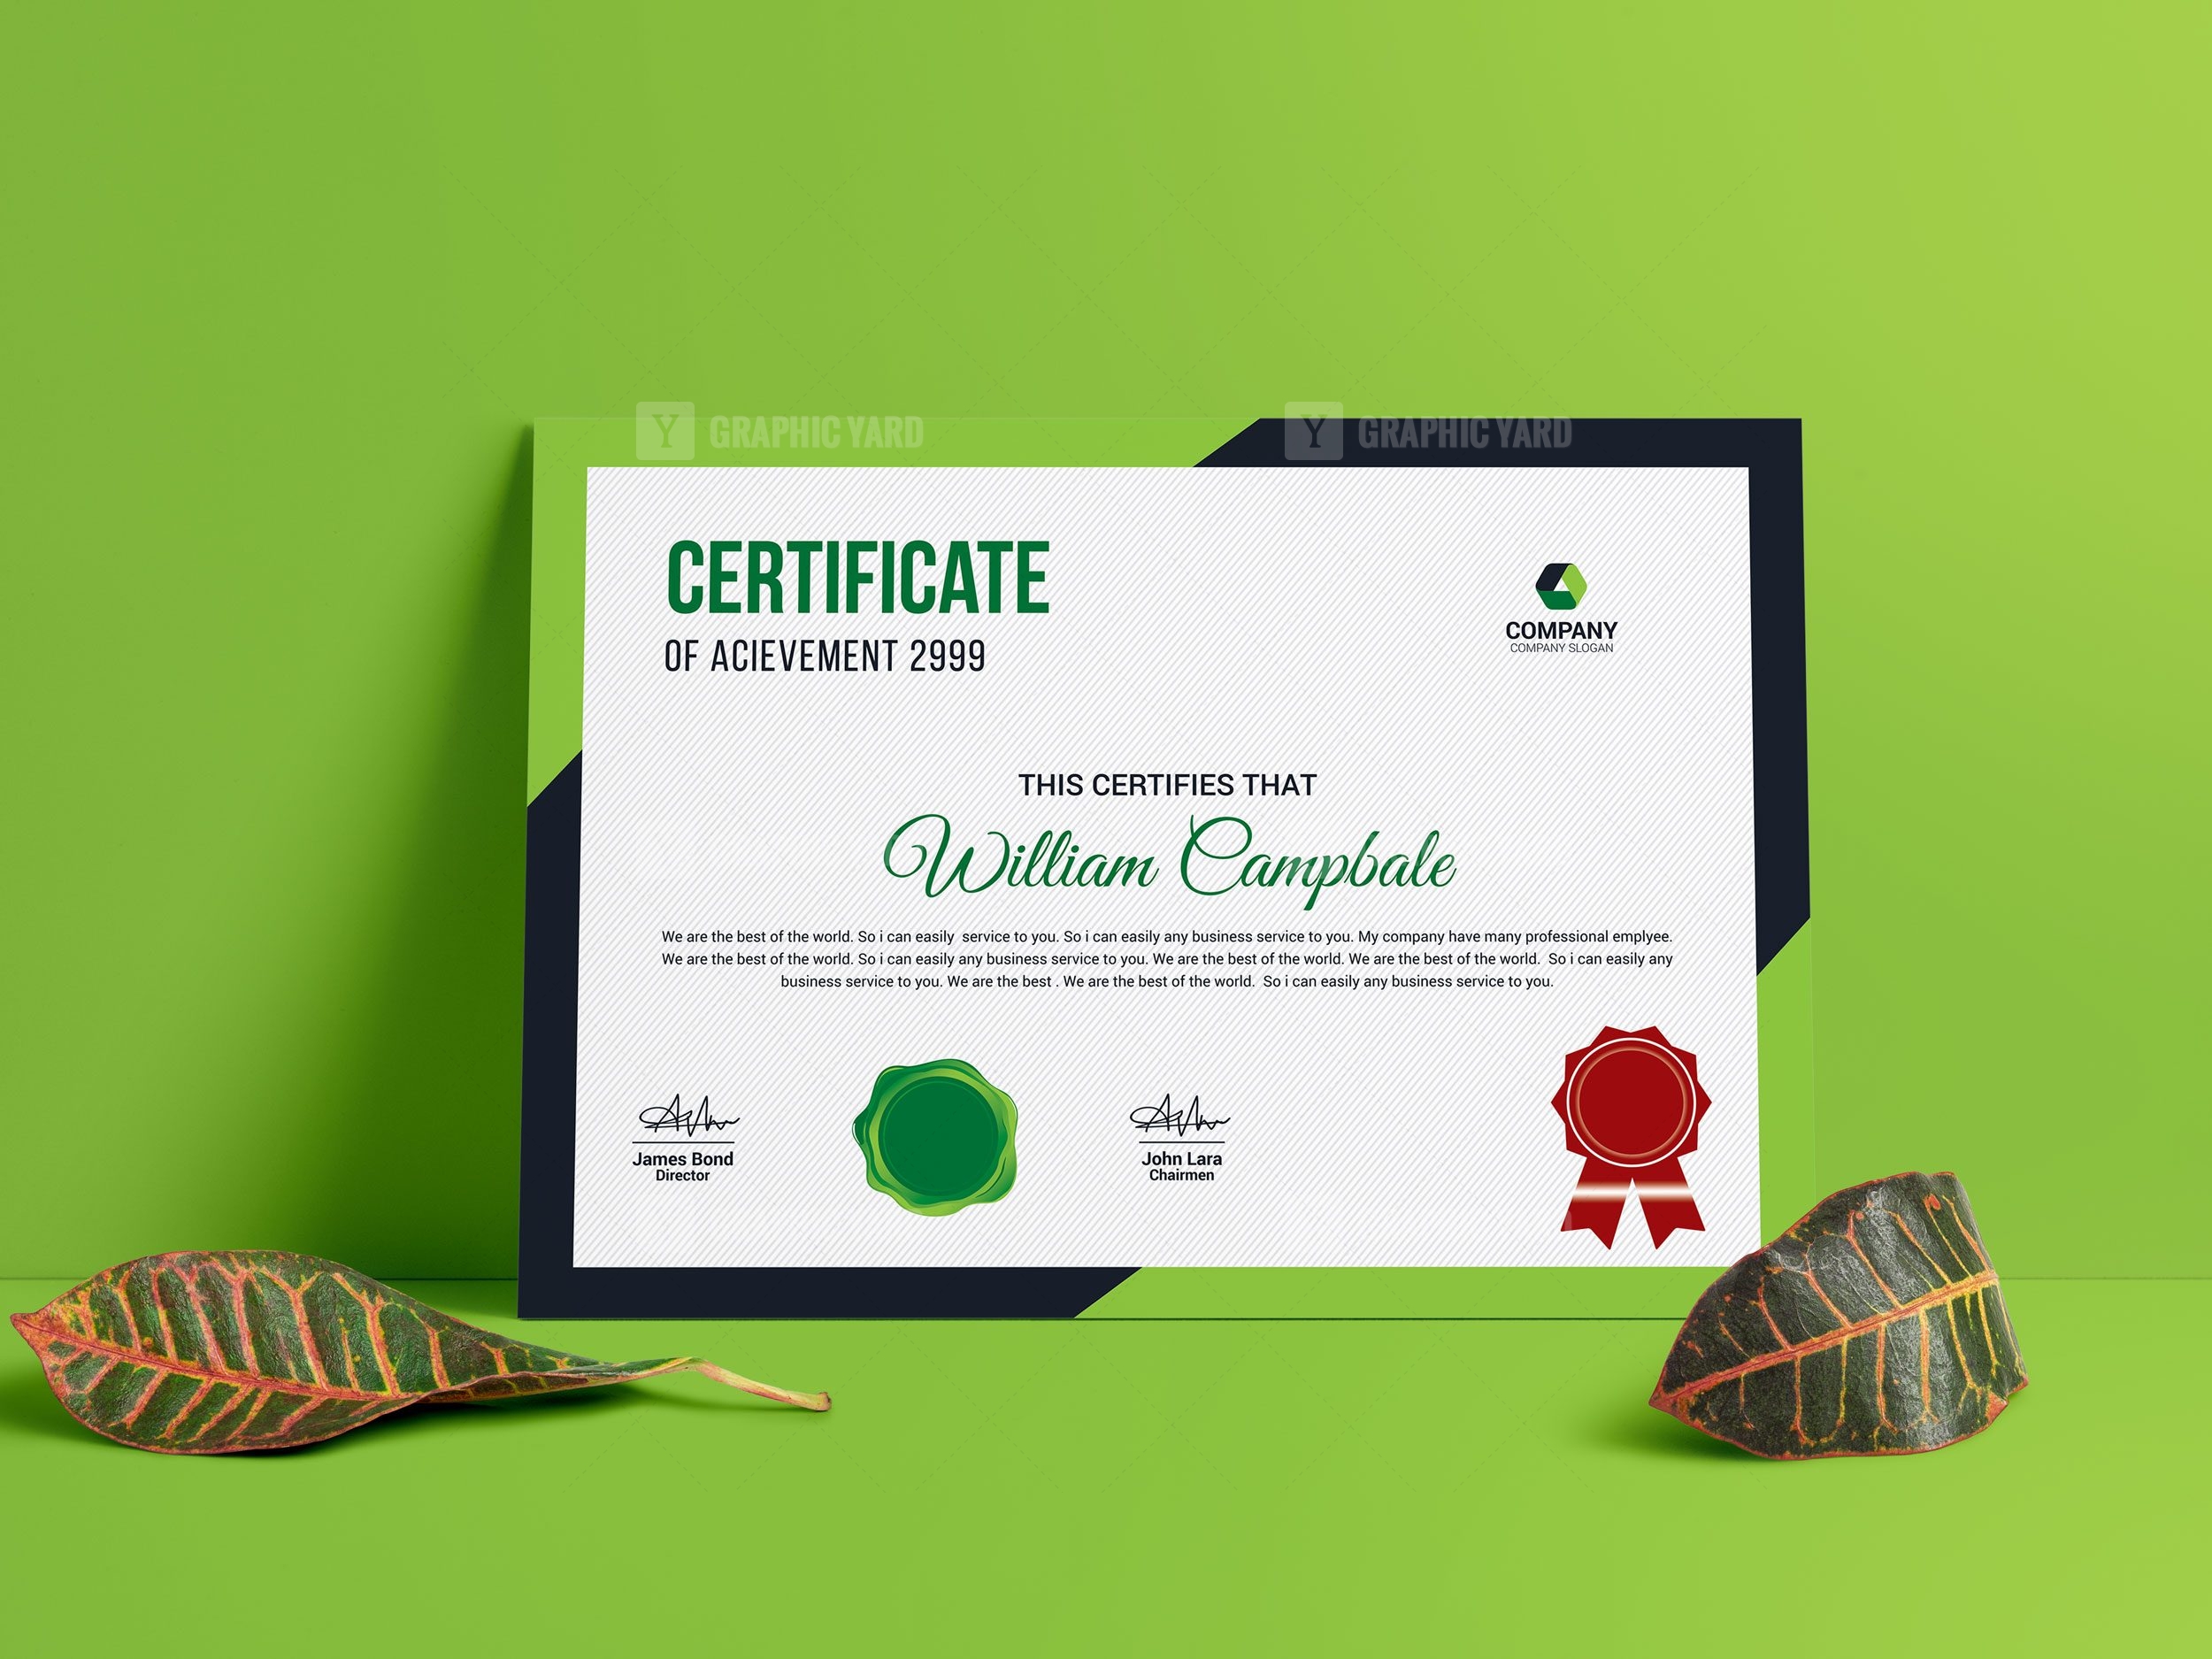 Infographic Tutorial Illustrator Cs3 Templates For Certificates 7834